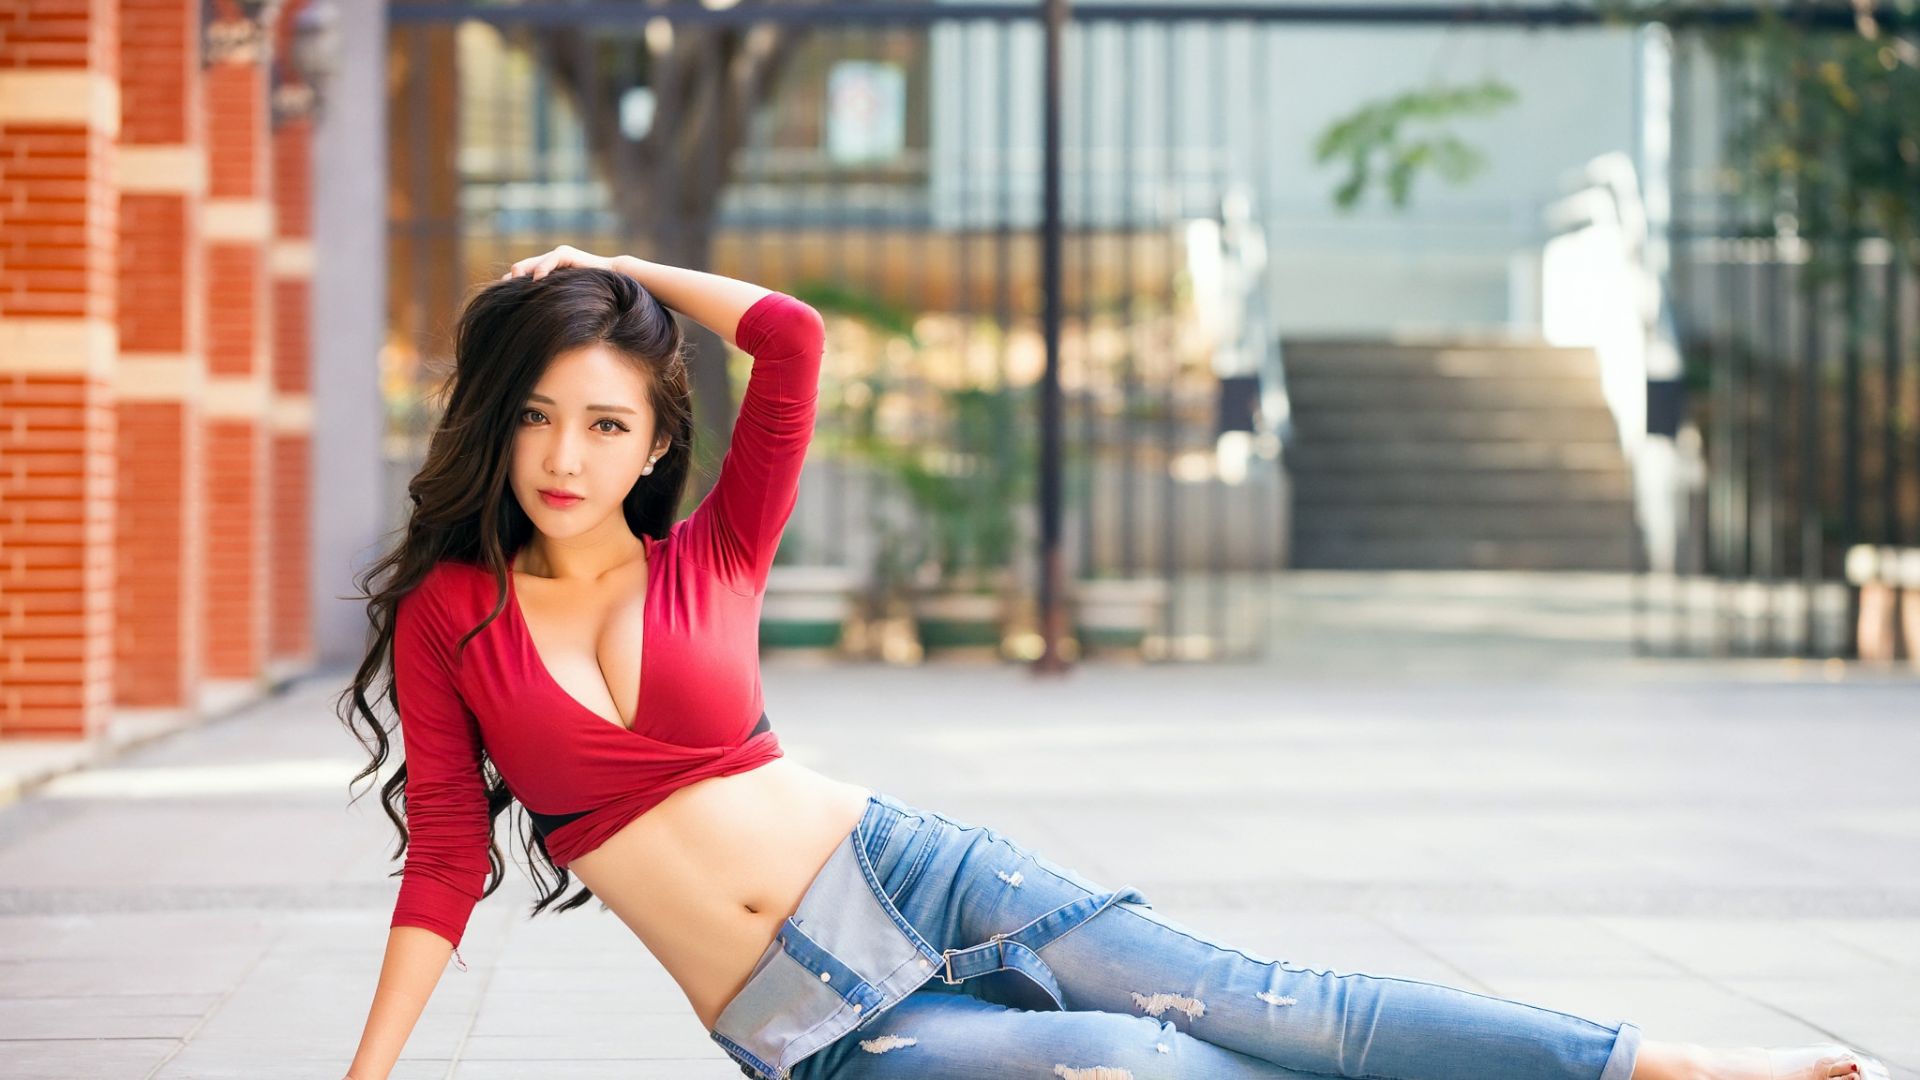 Wallpaper Hot Asian model, brunette, jeans